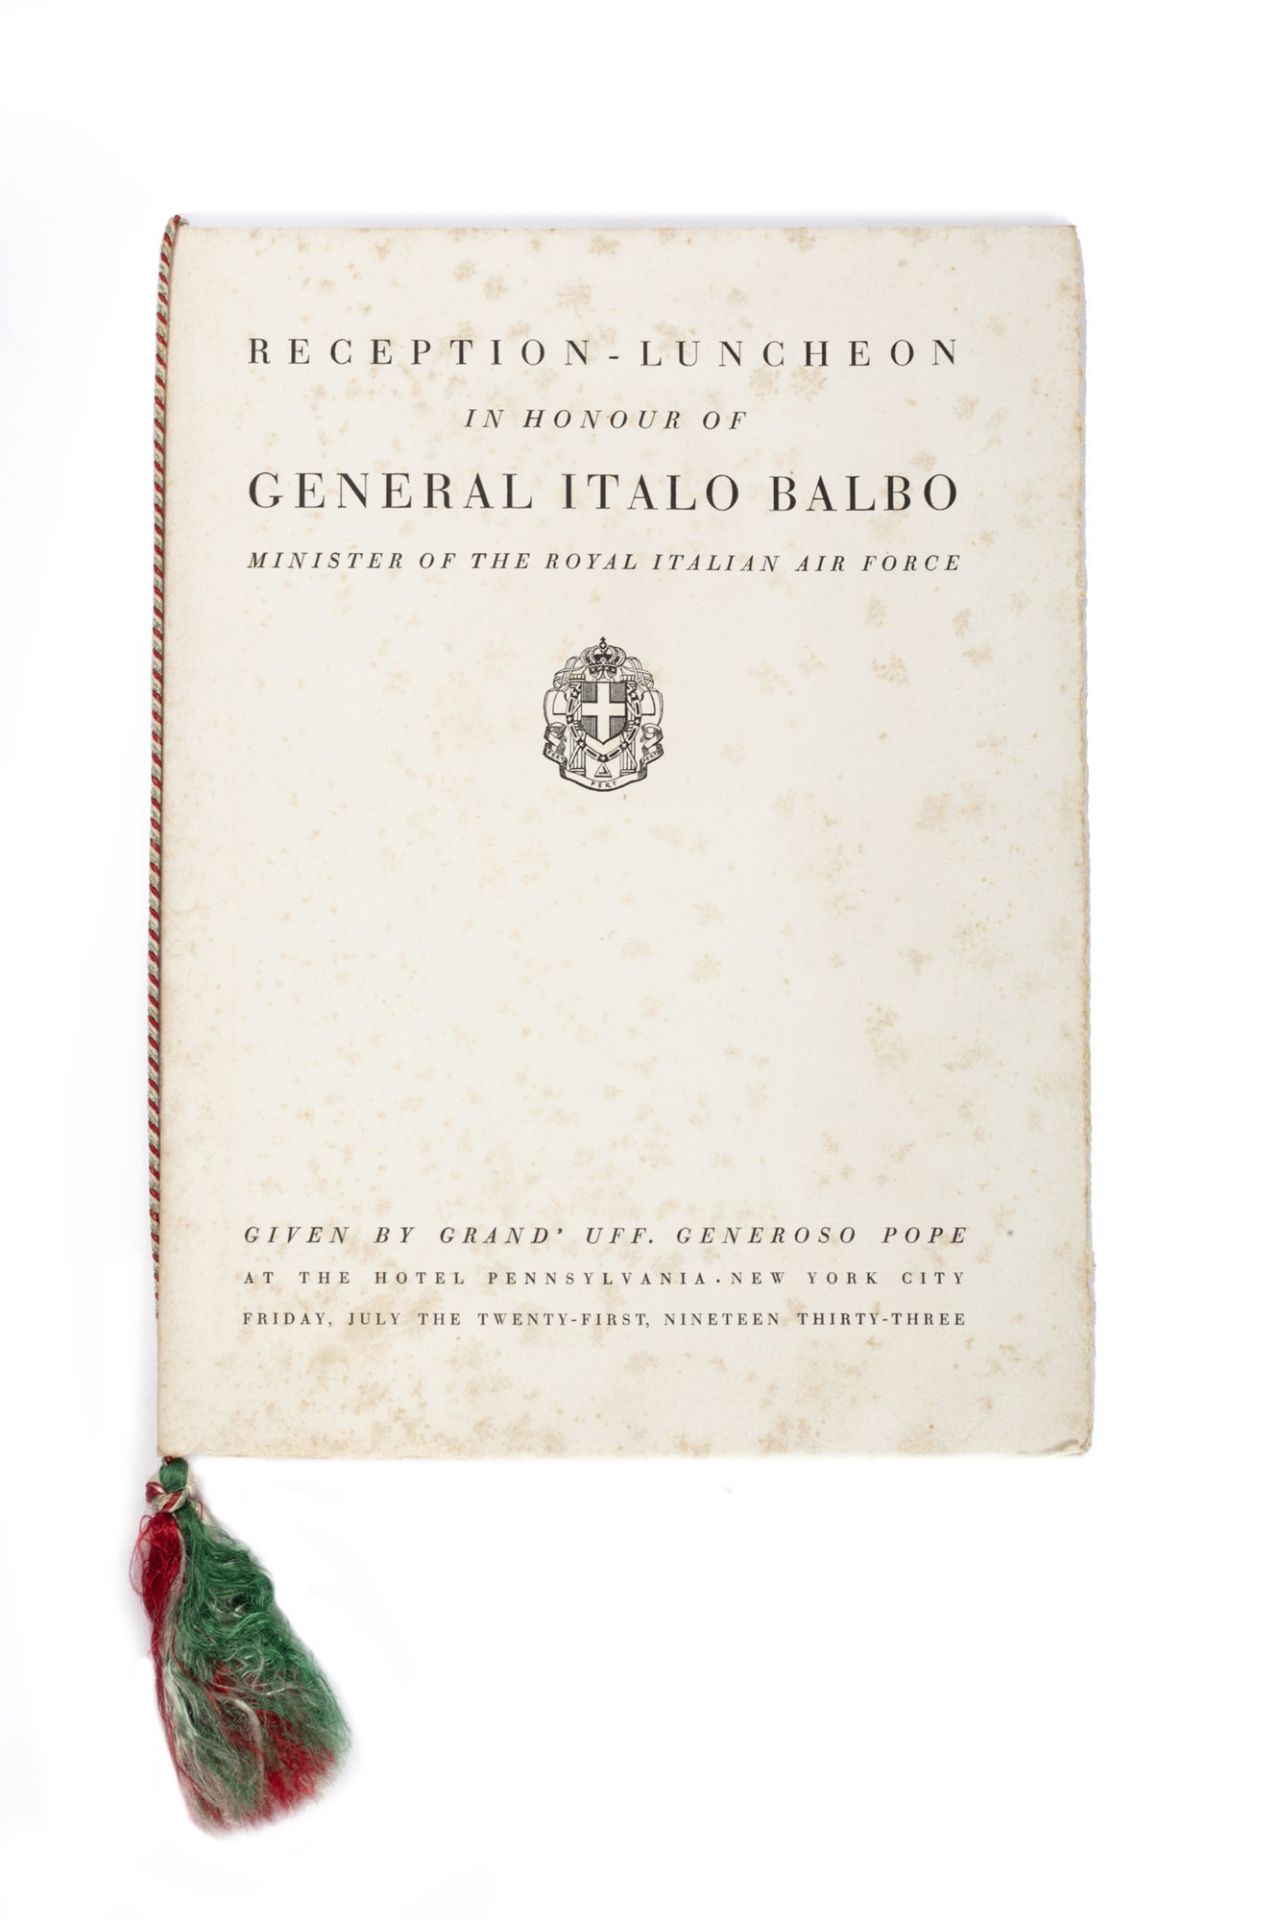 Manoscritto - Balbo, Italo - Reception - Luncheon in honor of General Italo Balbo